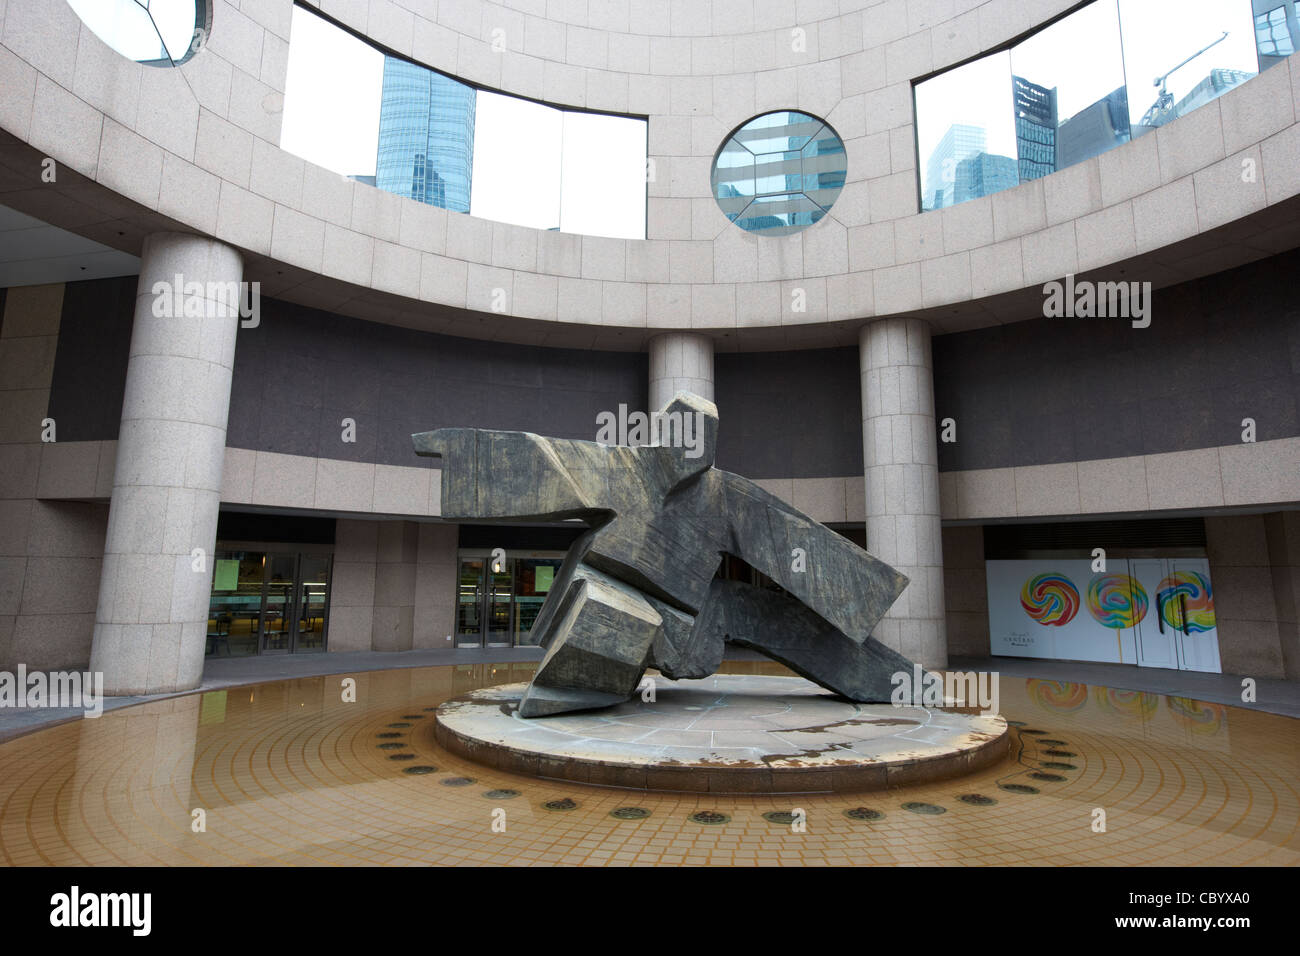 Ju 36.Etage Tai Chi Skulptur auf dem Forum am Exchange Square Hongkong Sonderverwaltungsregion Hongkong China Asien Stockfoto